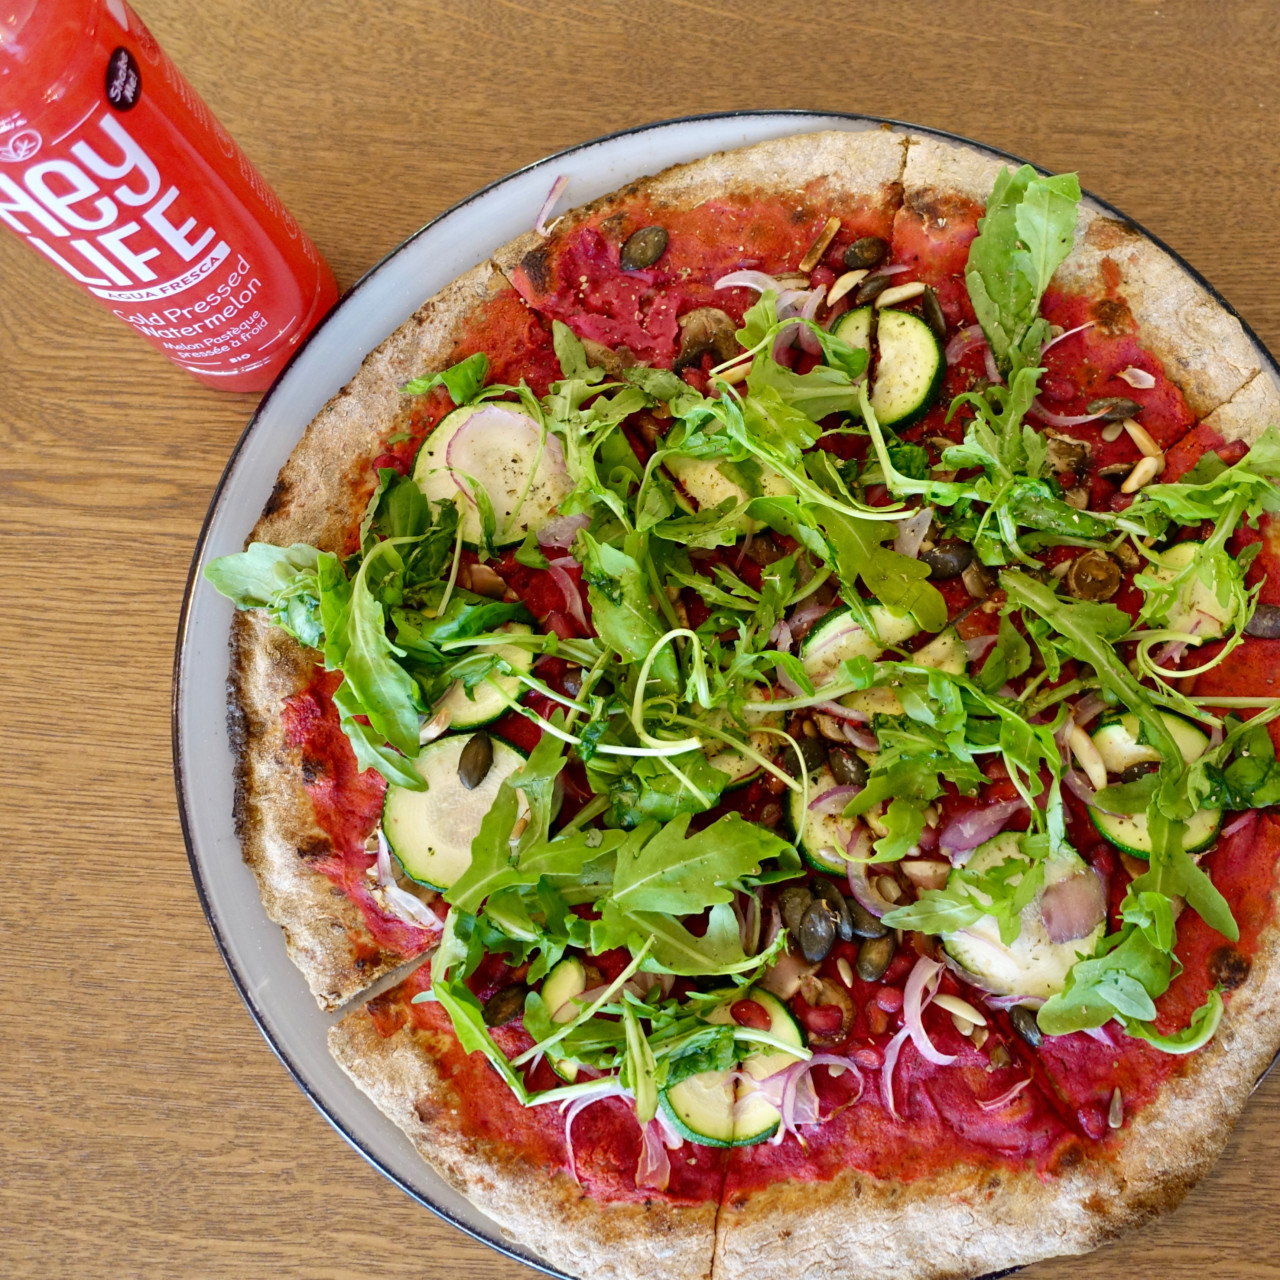 Die vegane #Foodporn-Pizza von Stripped Pizza. Zusammen mit dem frischen HeyLife-Juice ein ausgewogenes Zmittag.